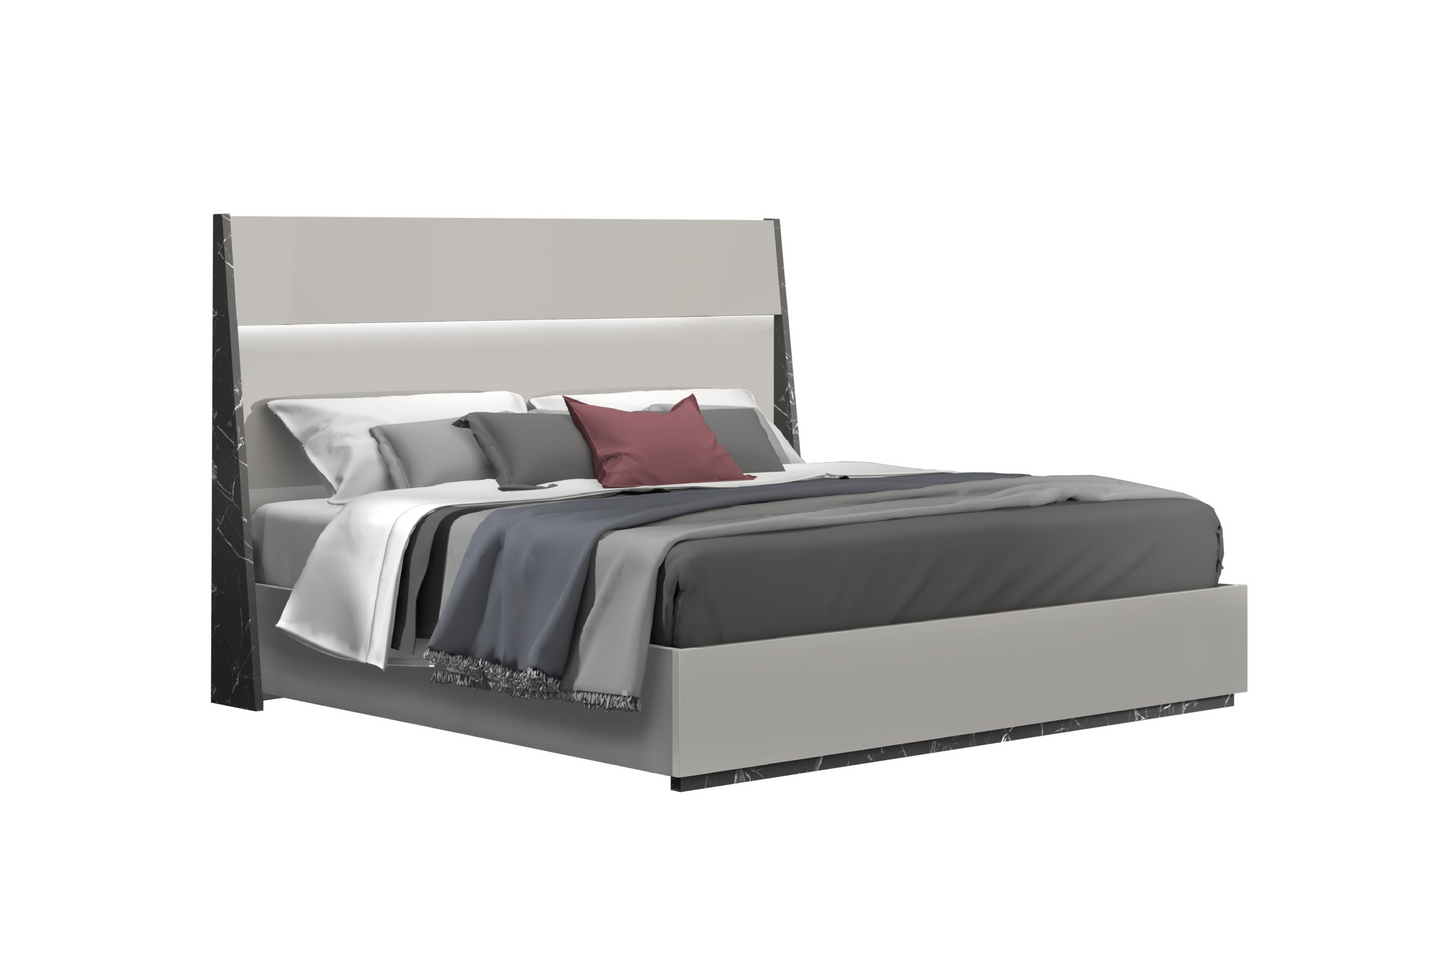 Stoneage Premium Bedroom Bed SKU:17455